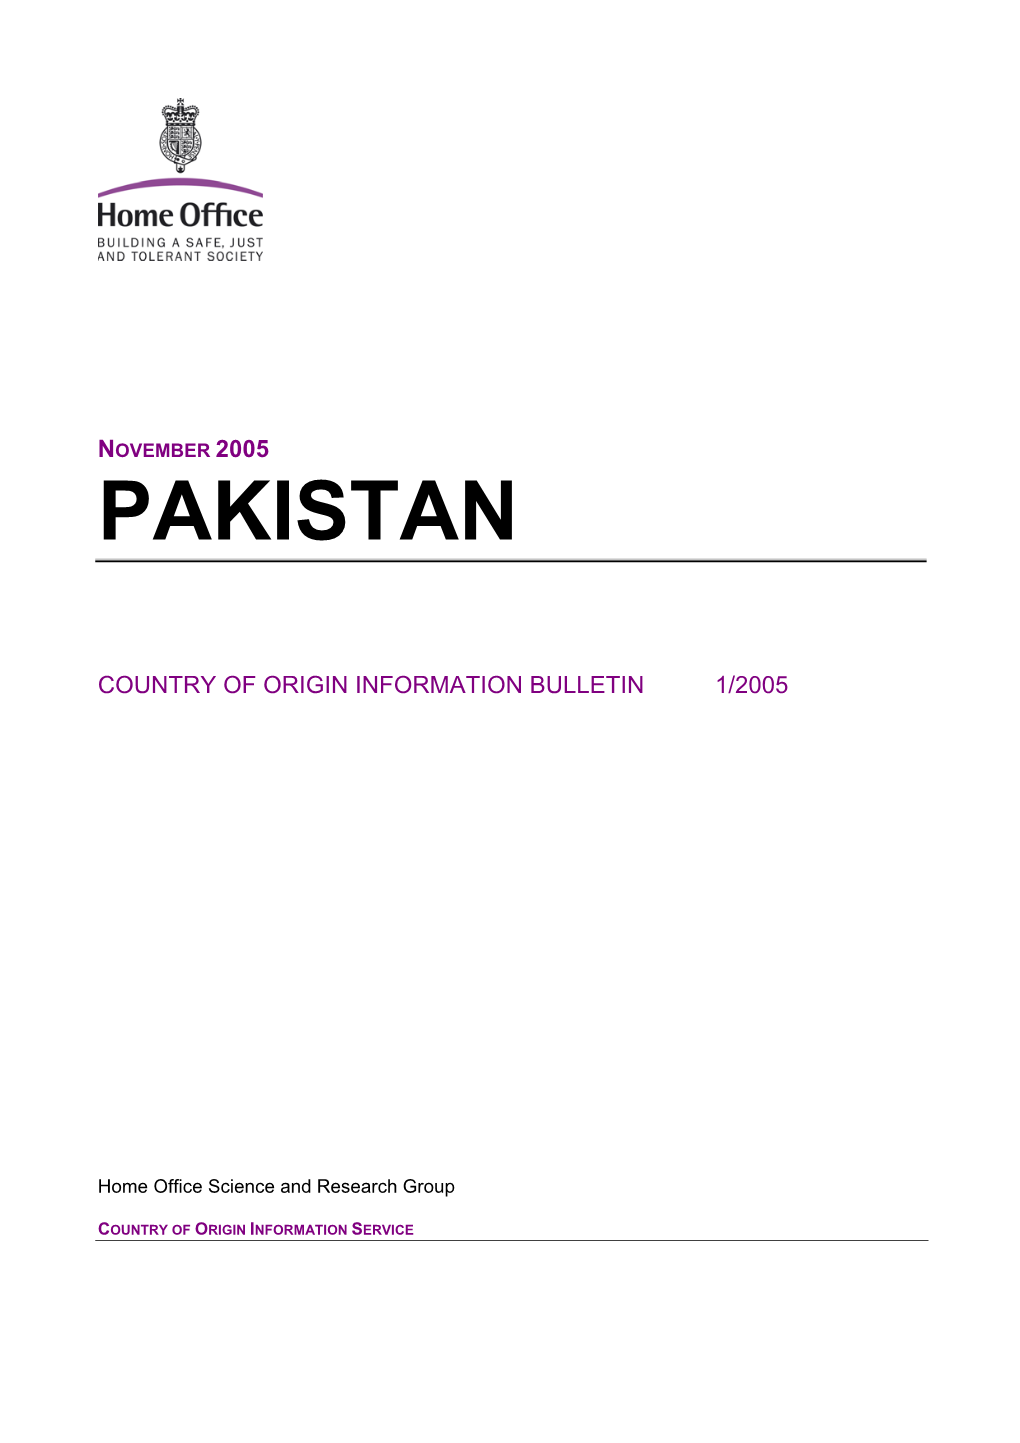 Pakistan Bulletin